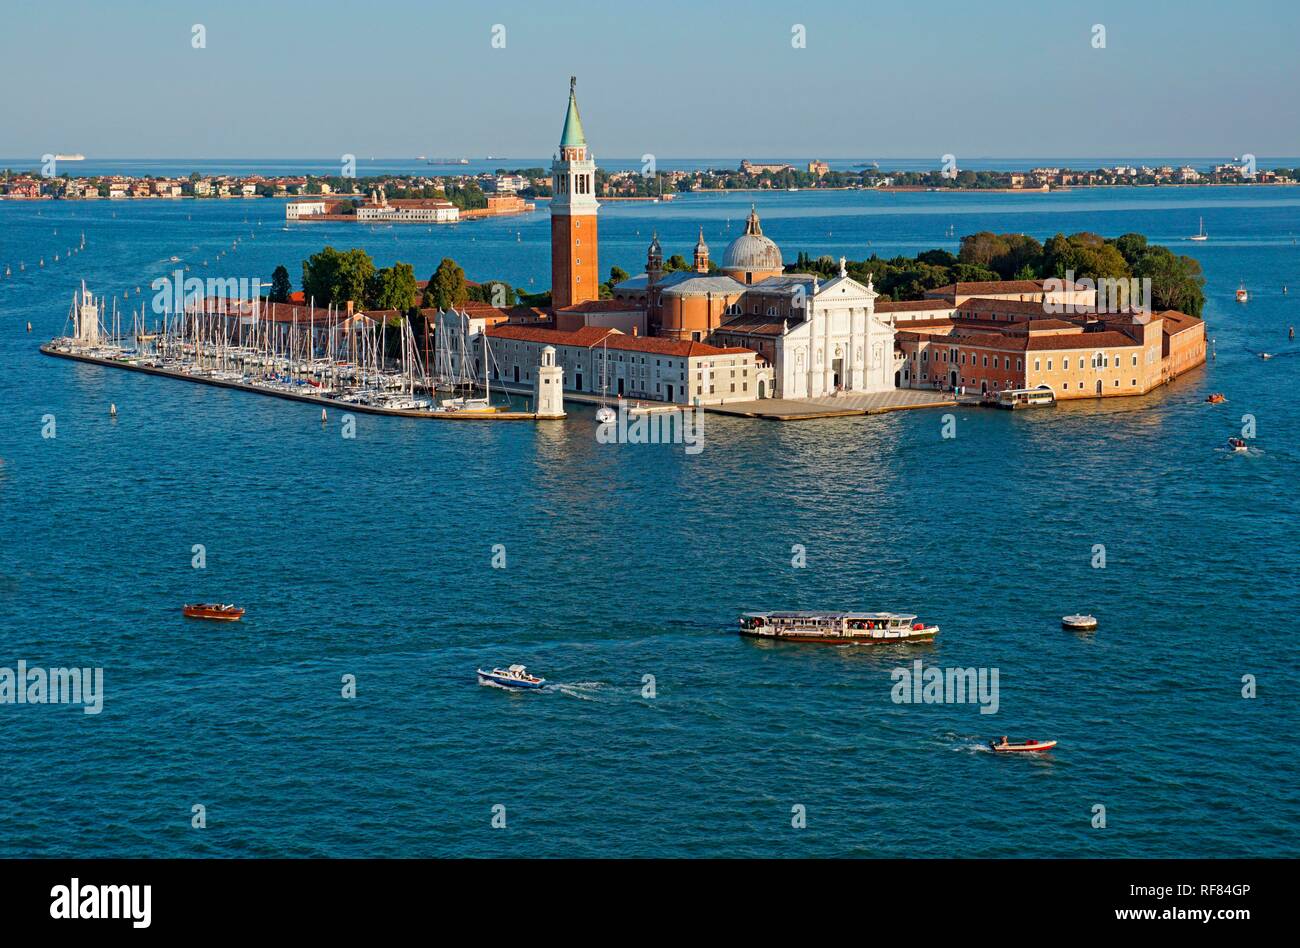 San Giorgio Maggiore Church on the island of San Giorgio Maggiore, Venice, Province of Venice, Italy Stock Photo